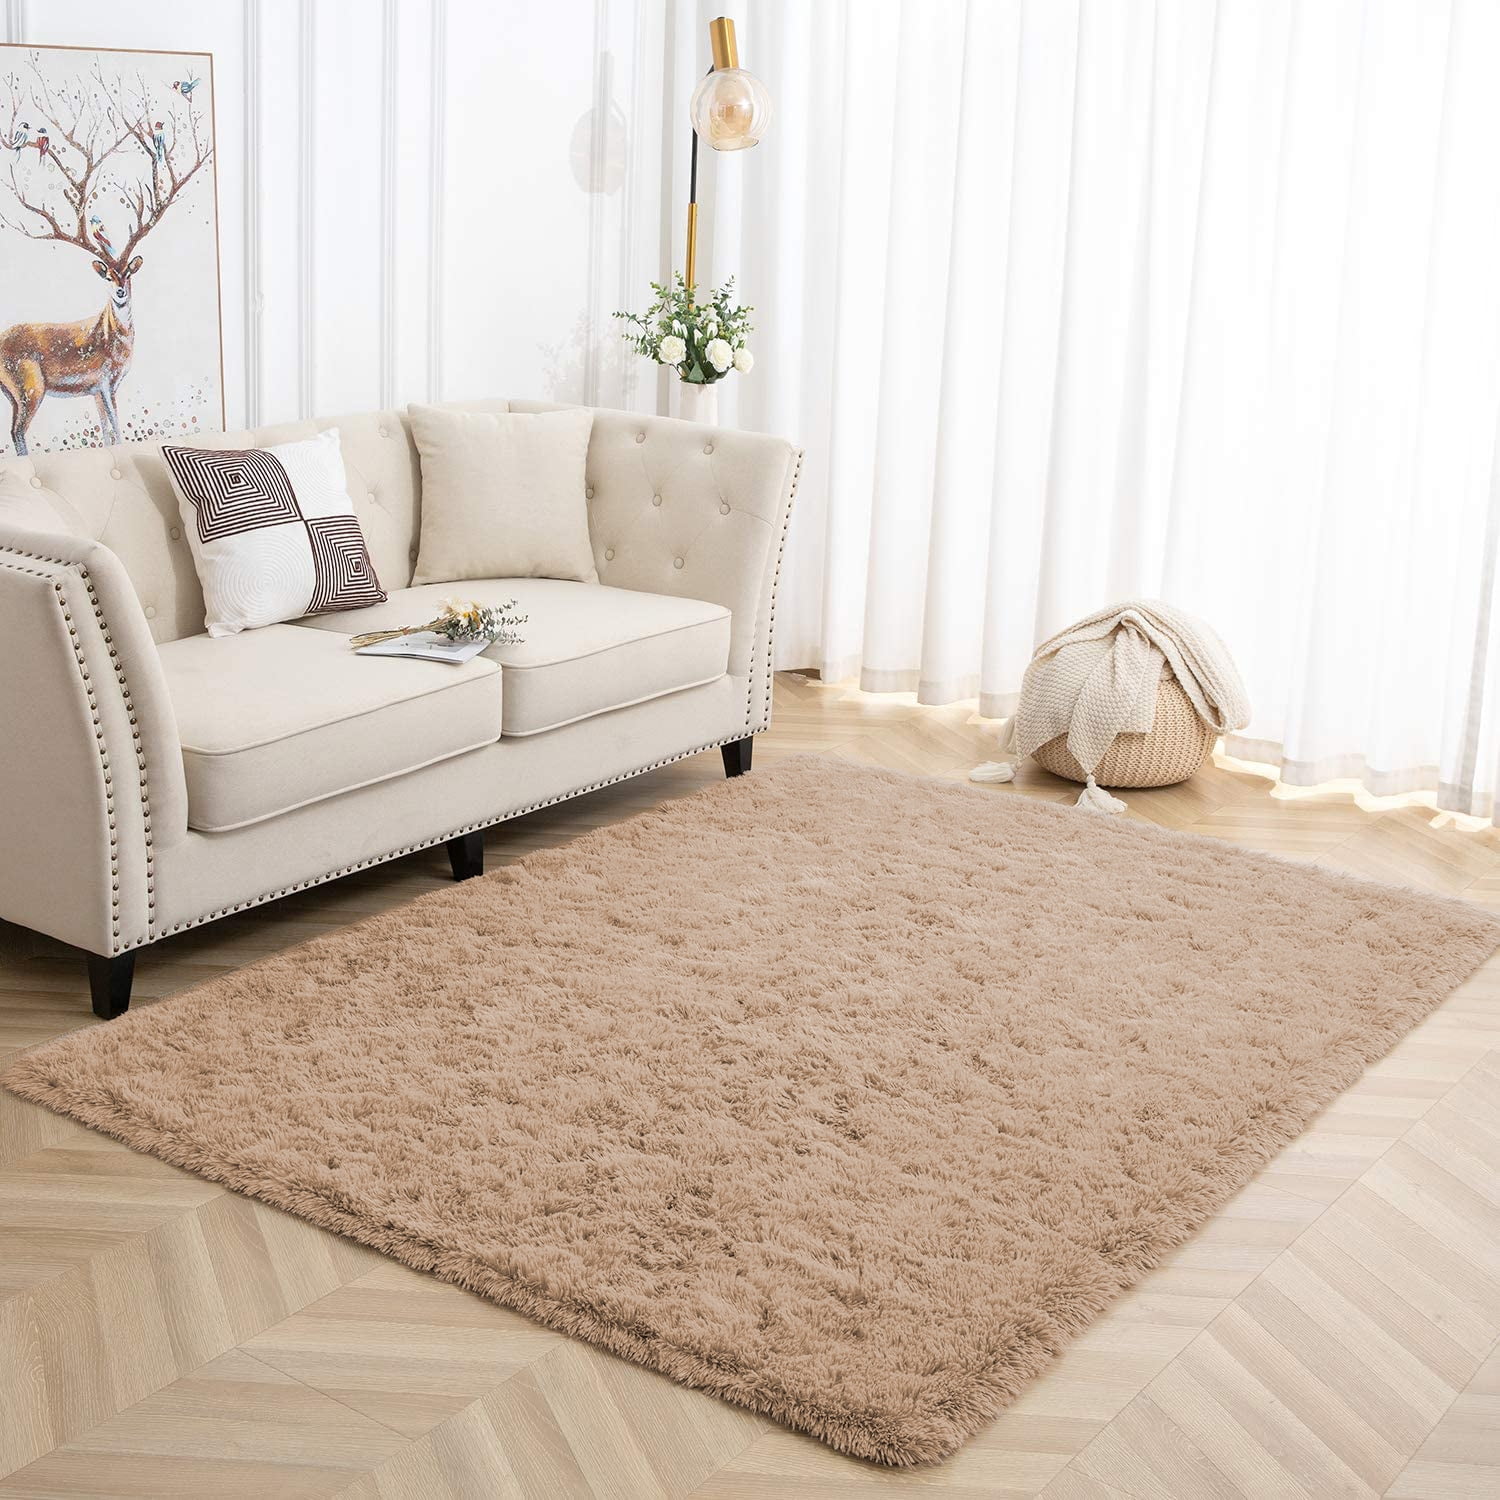 Softlife Rug for Bedroom 4x5.3 Feet Area Rug for Living Room Super